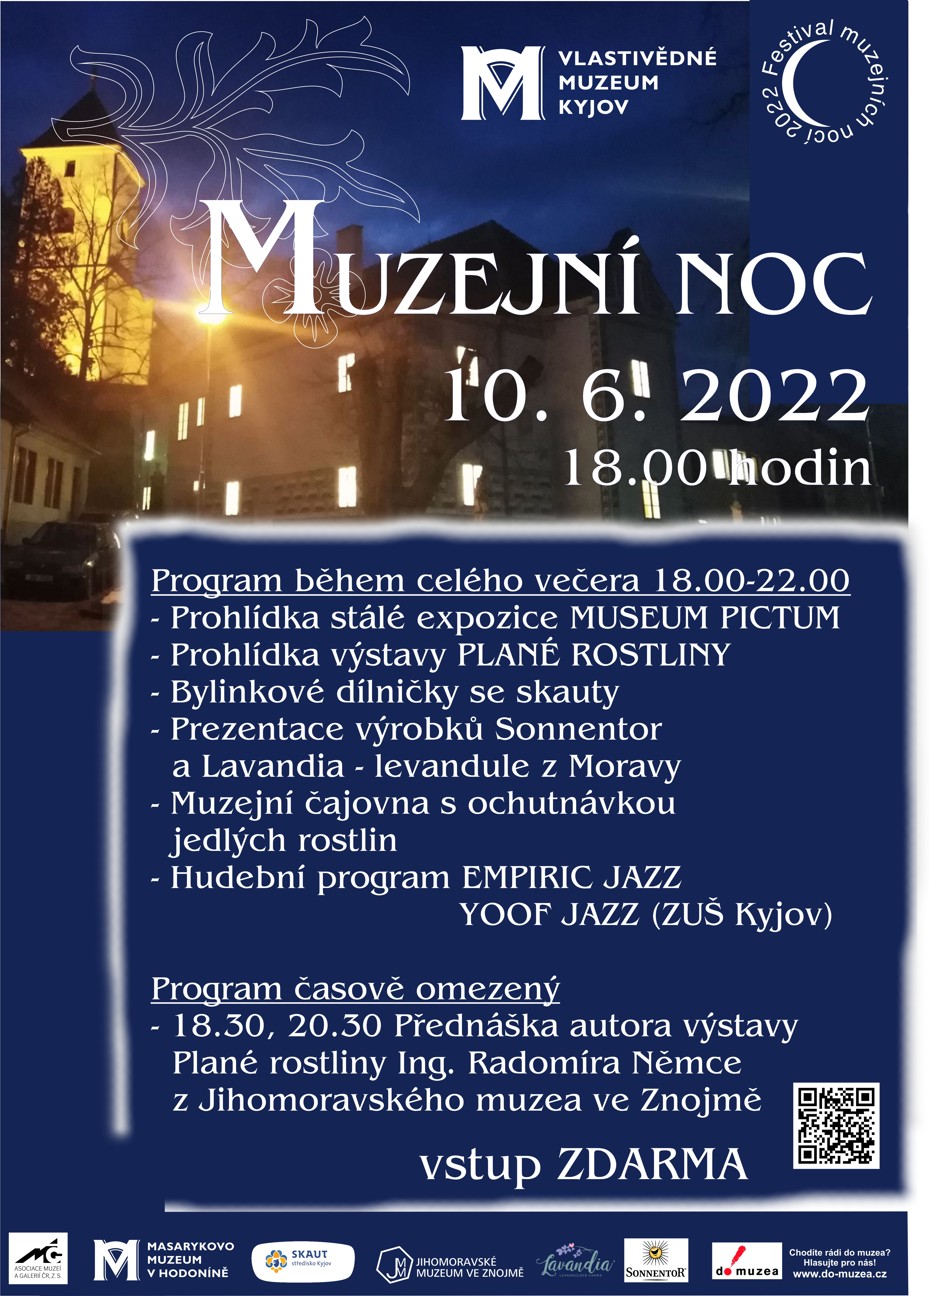 Muzejn noc 2022 Kyjov